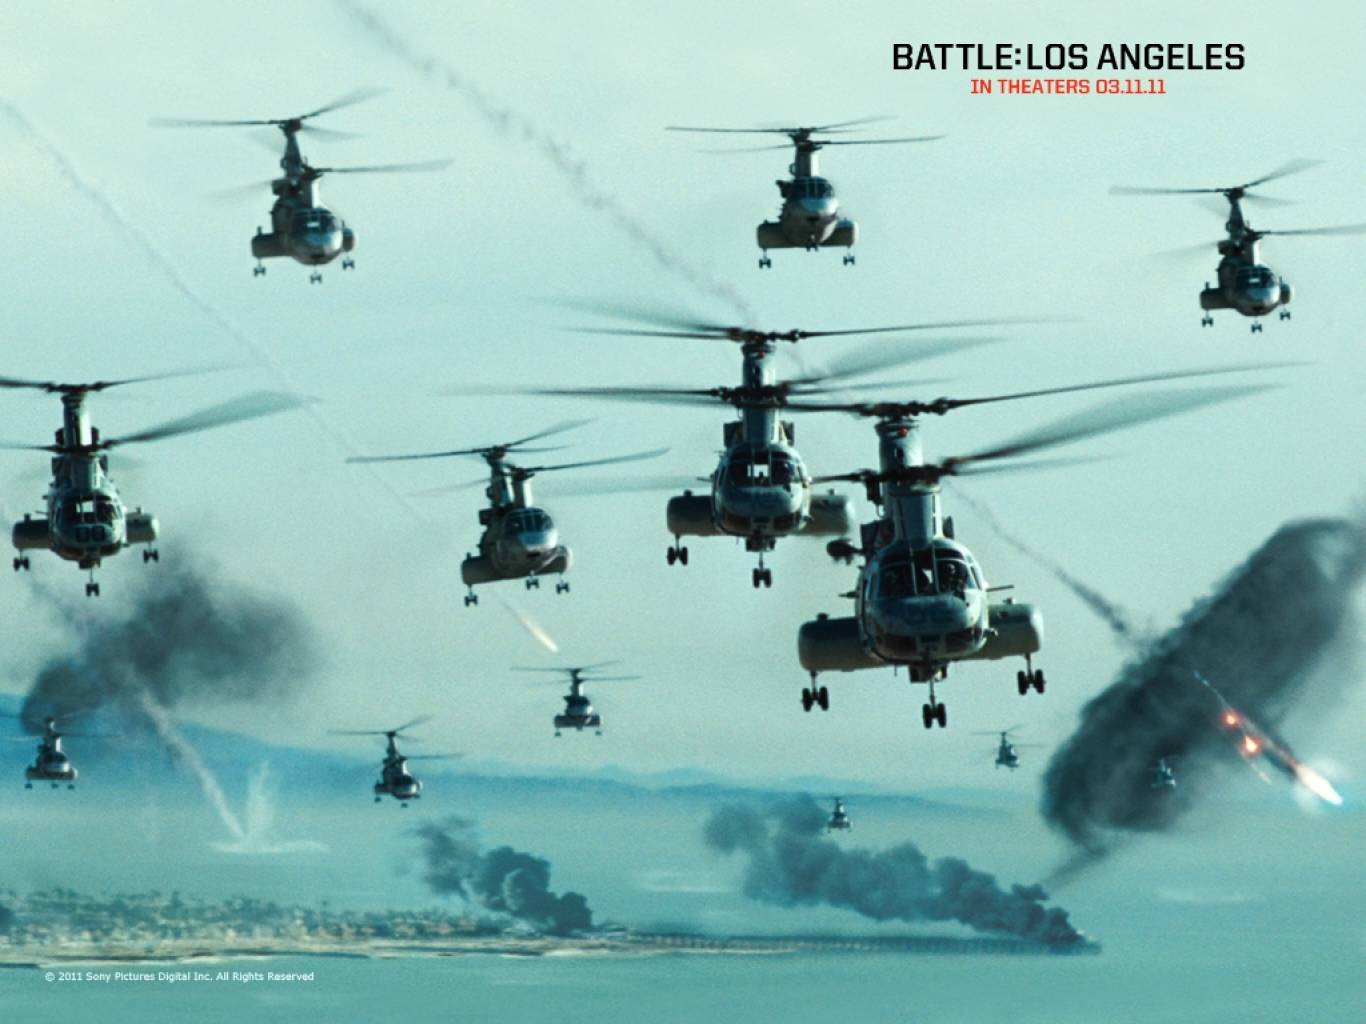 Battle: Los Angeles Movie HD Wallpaper. Battle: Los Angeles HD Movie Wallpaper Free Download (1080p to 2K)